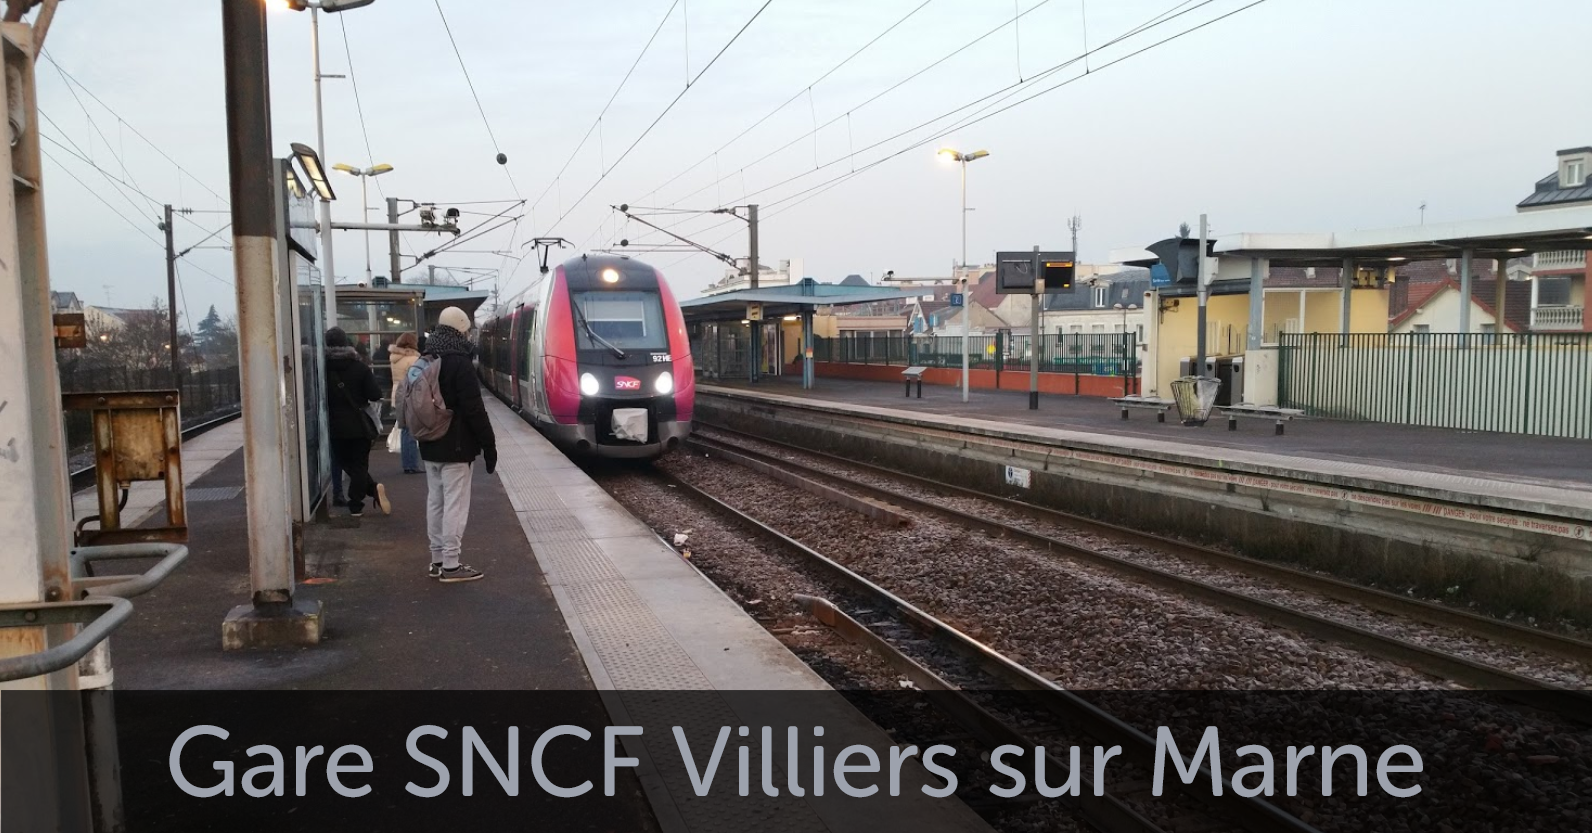 Gare SNCF Villiers sur Marne